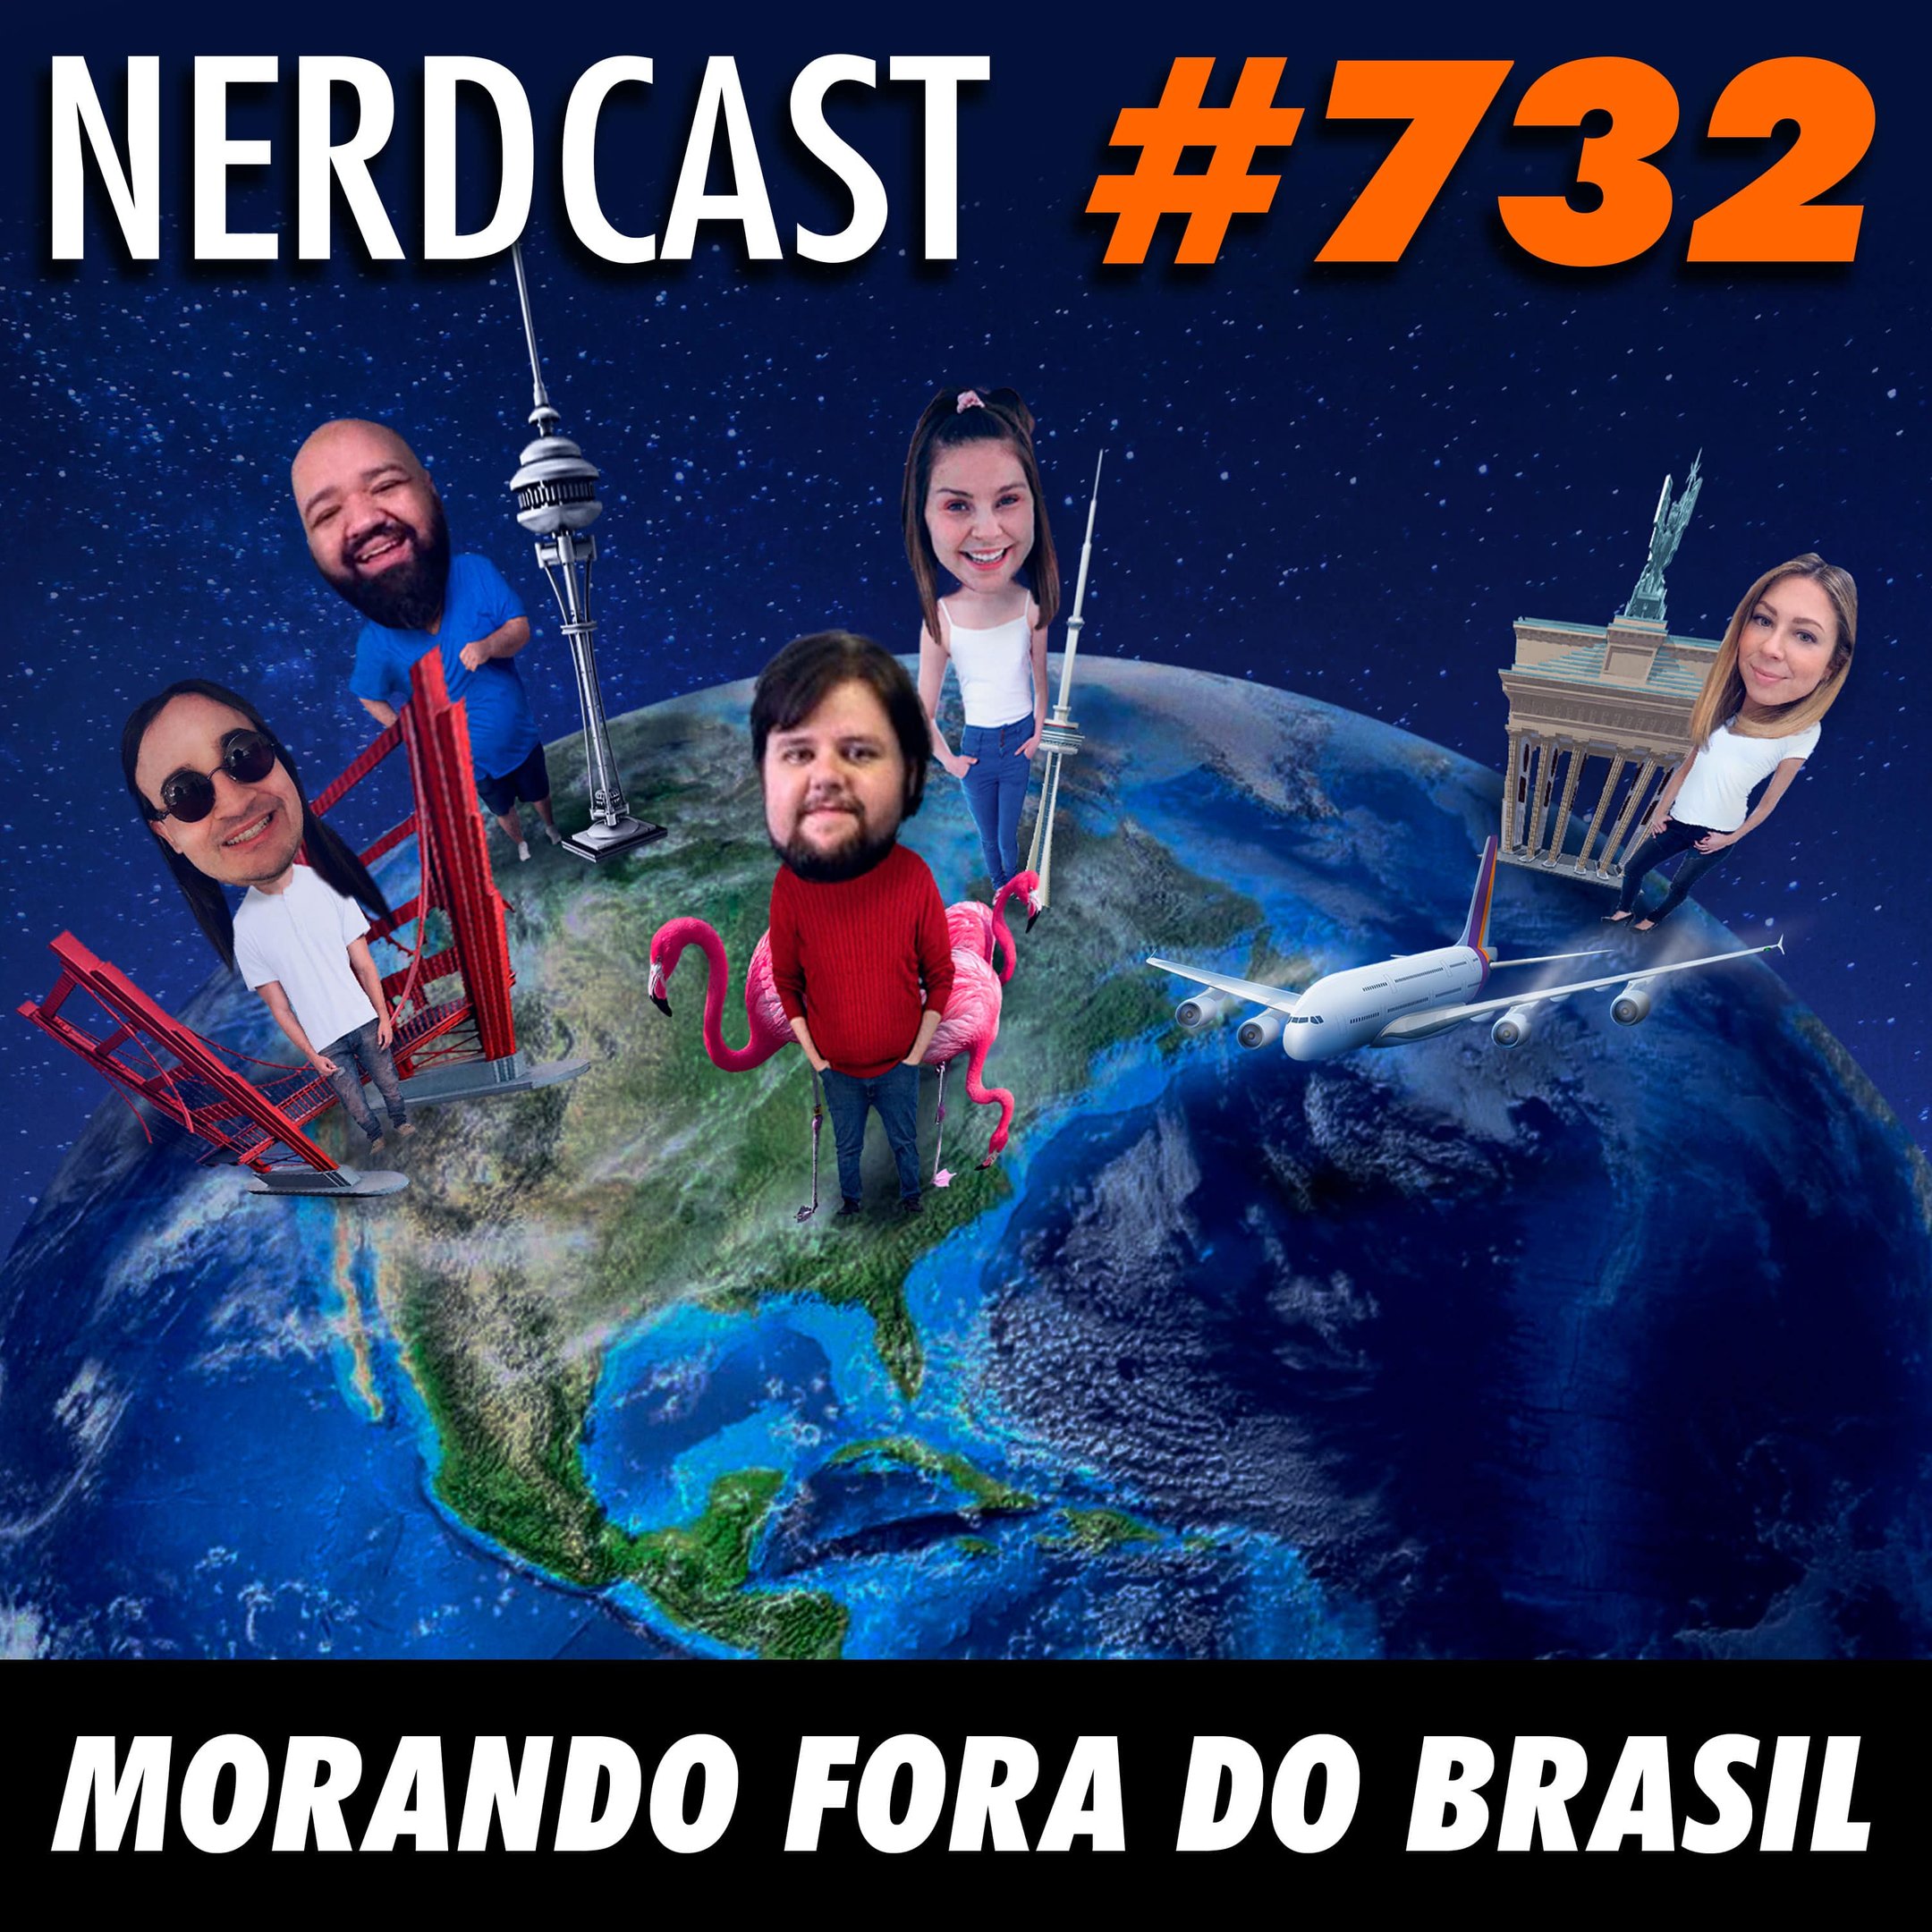 NerdCast 732 - Morando fora do Brasil